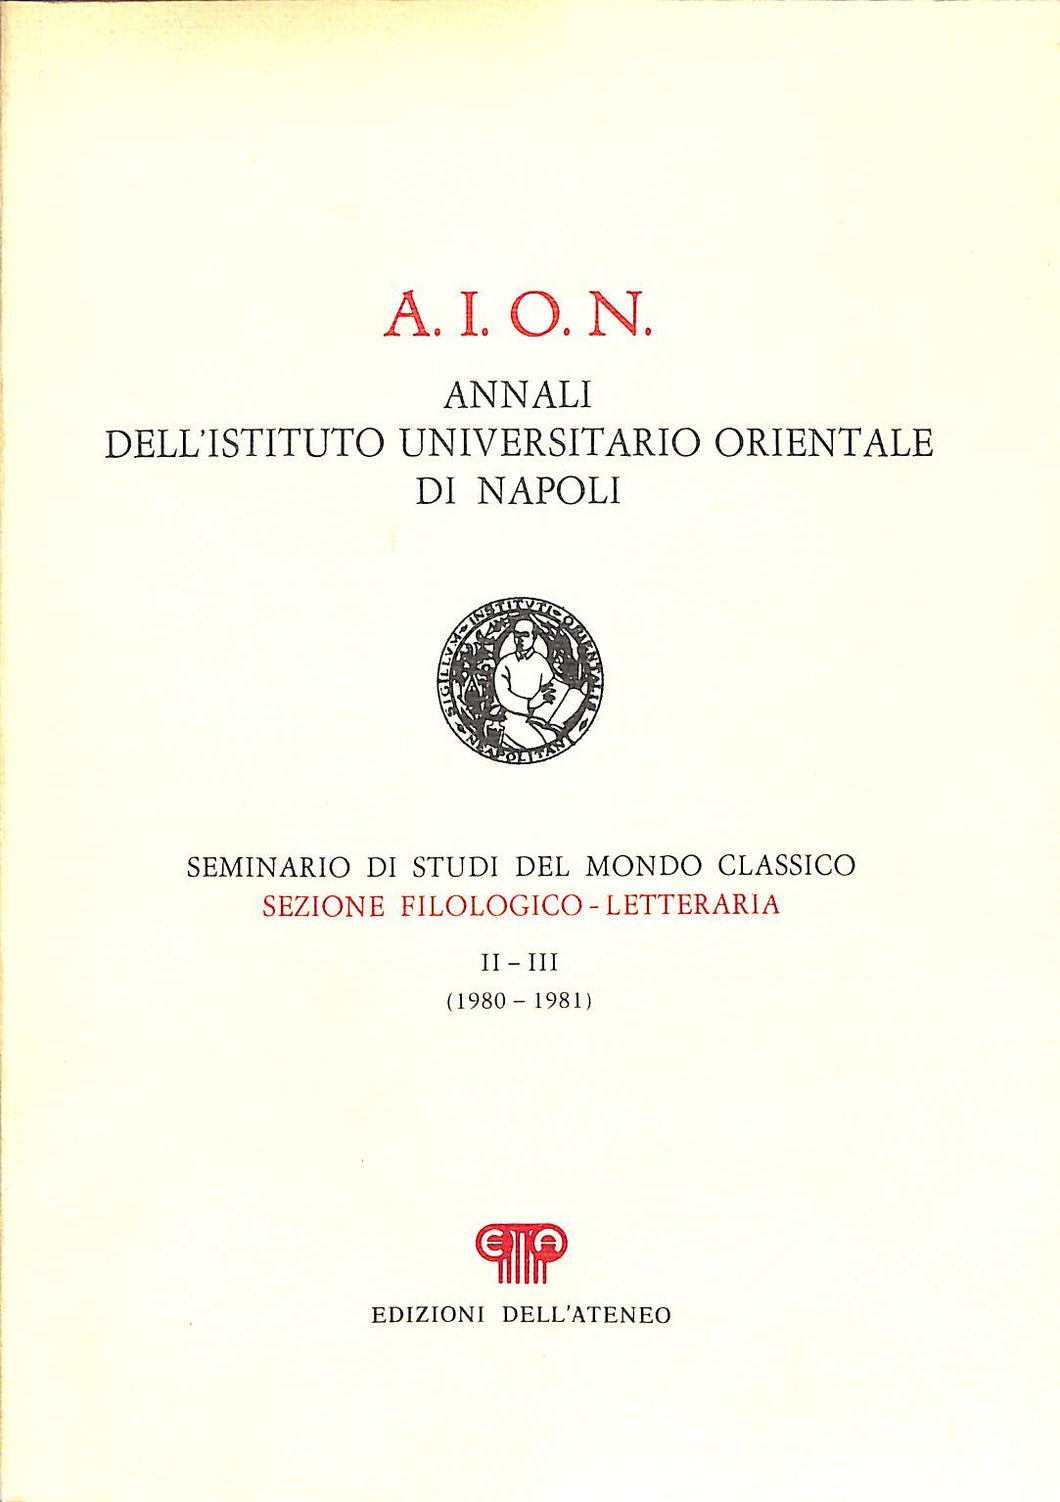 A.I.O.N. ANNALI DELL'ISTITUTO UNIVERSITARIO ORIENTALE DI NAPOLI / II E III (198